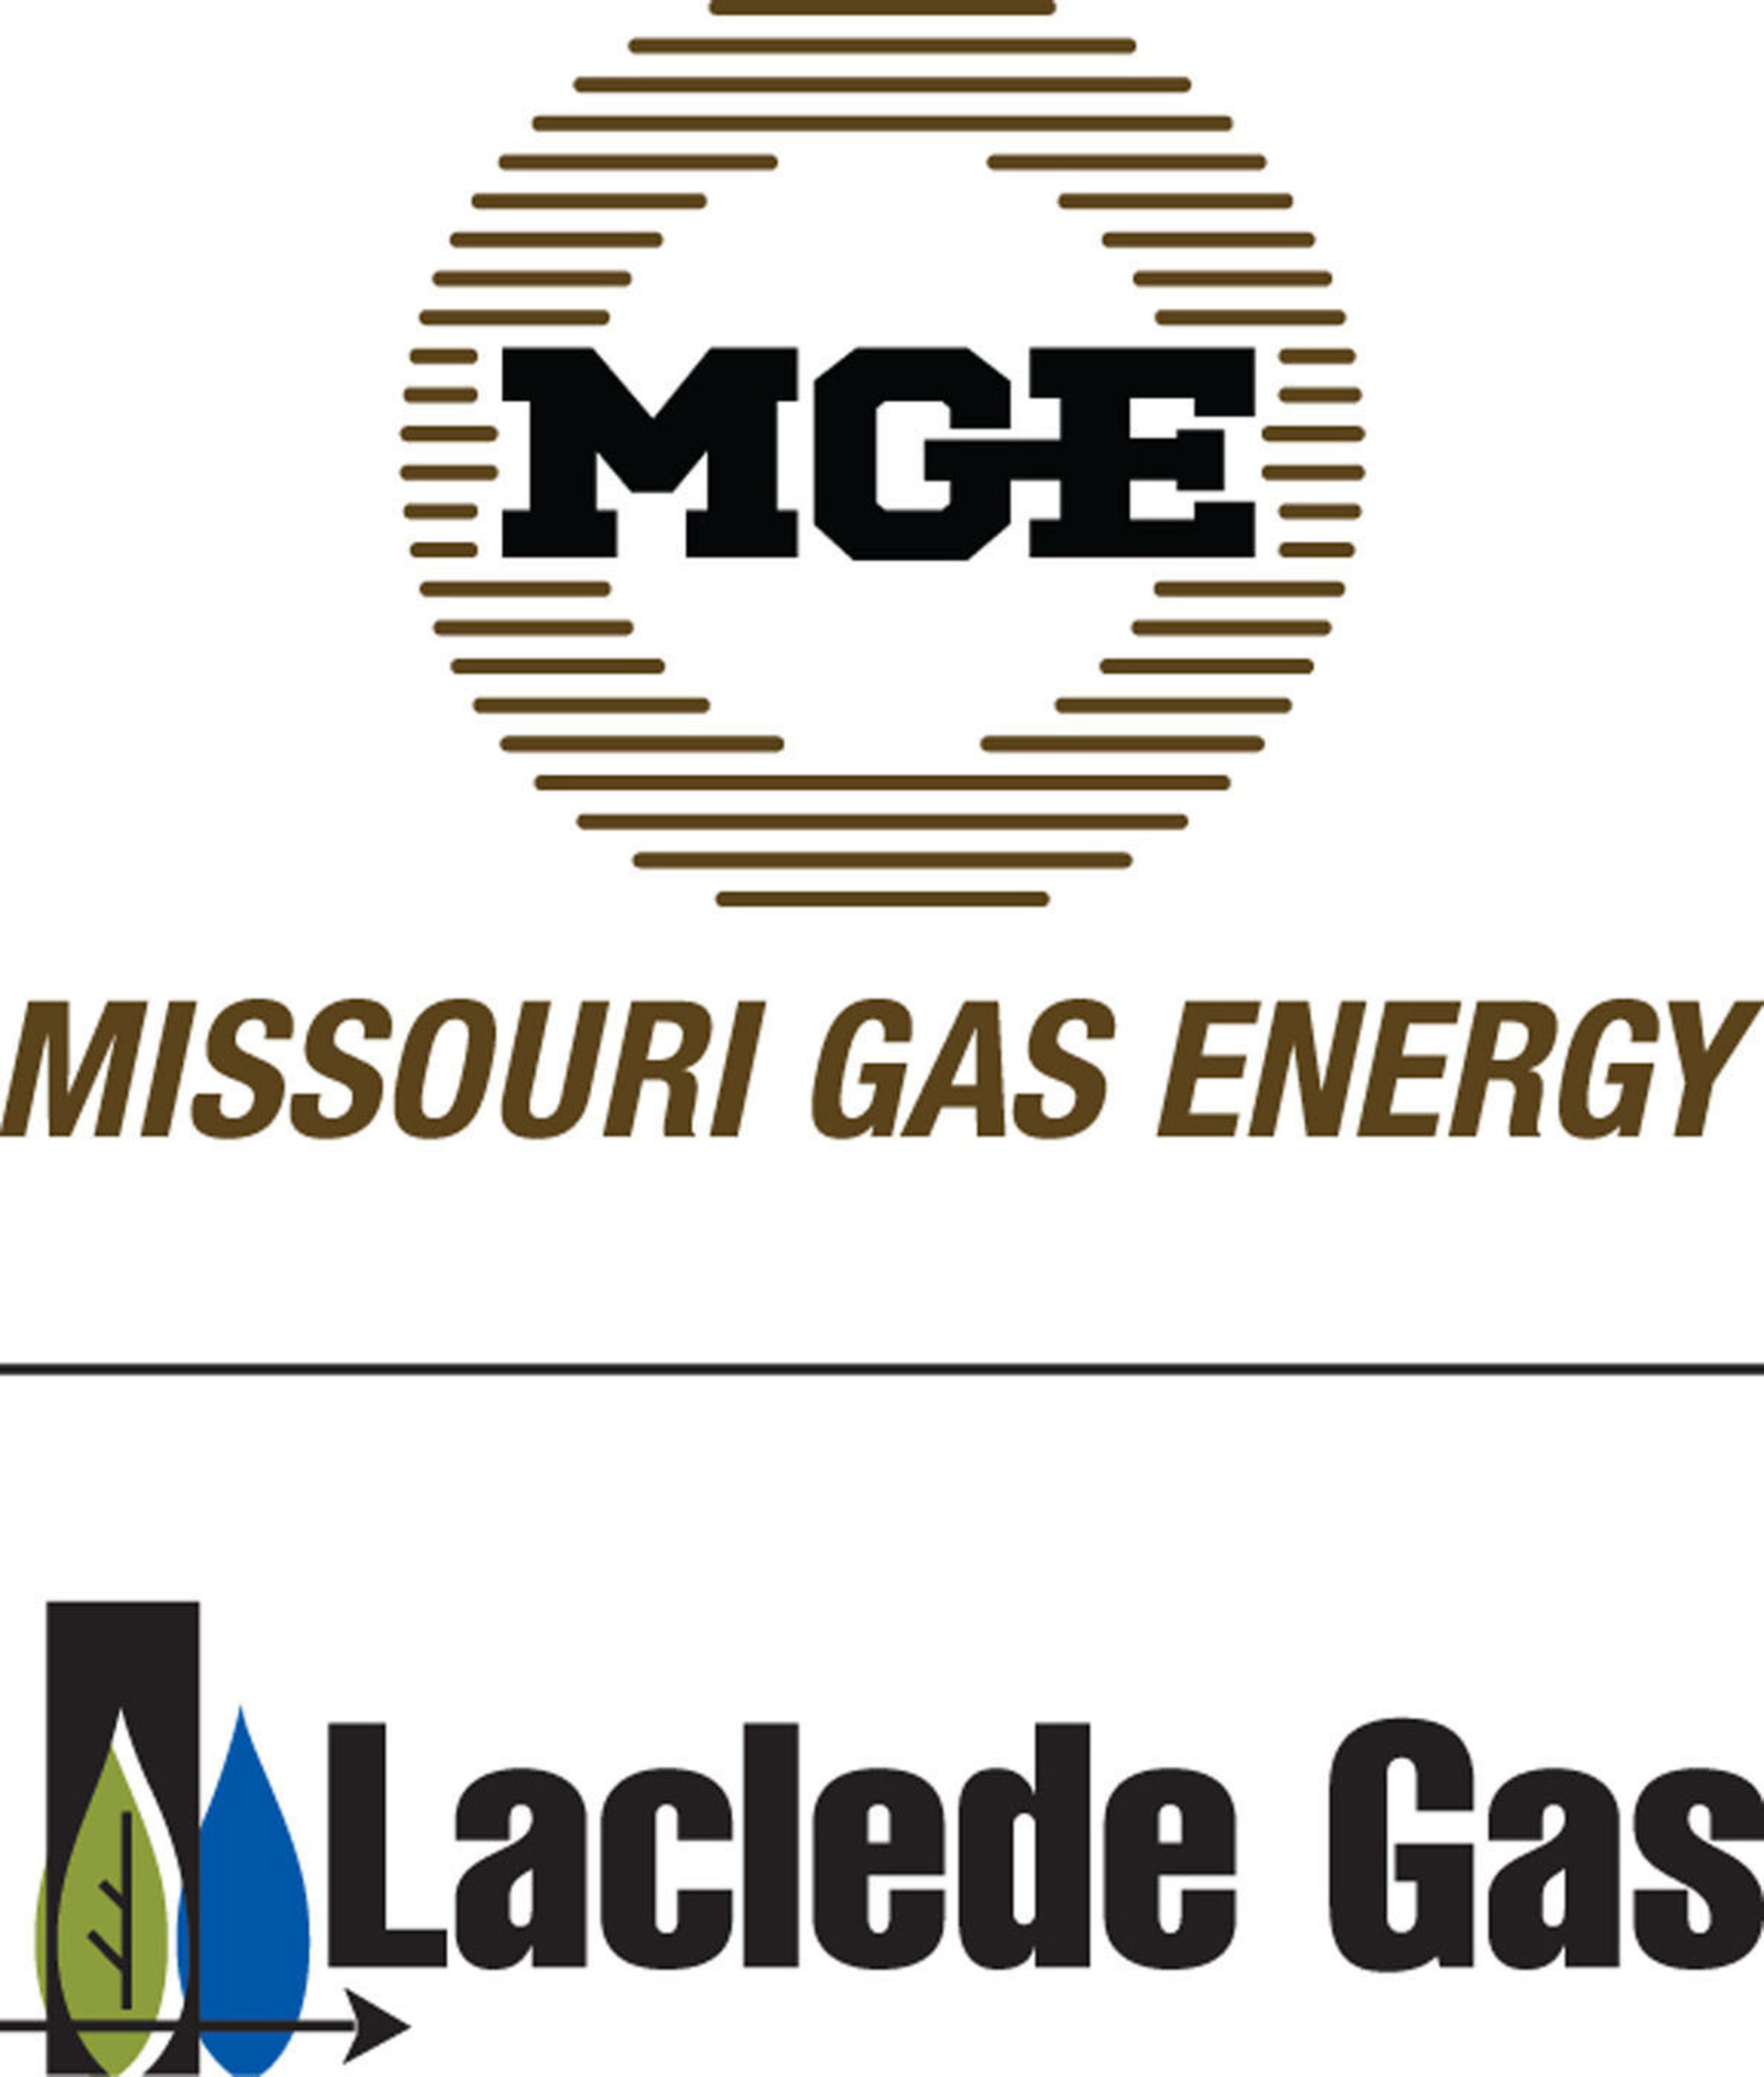 Missouri Gas Energy. (PRNewsFoto/Laclede Gas Company) (PRNewsFoto/LACLEDE GAS COMPANY)